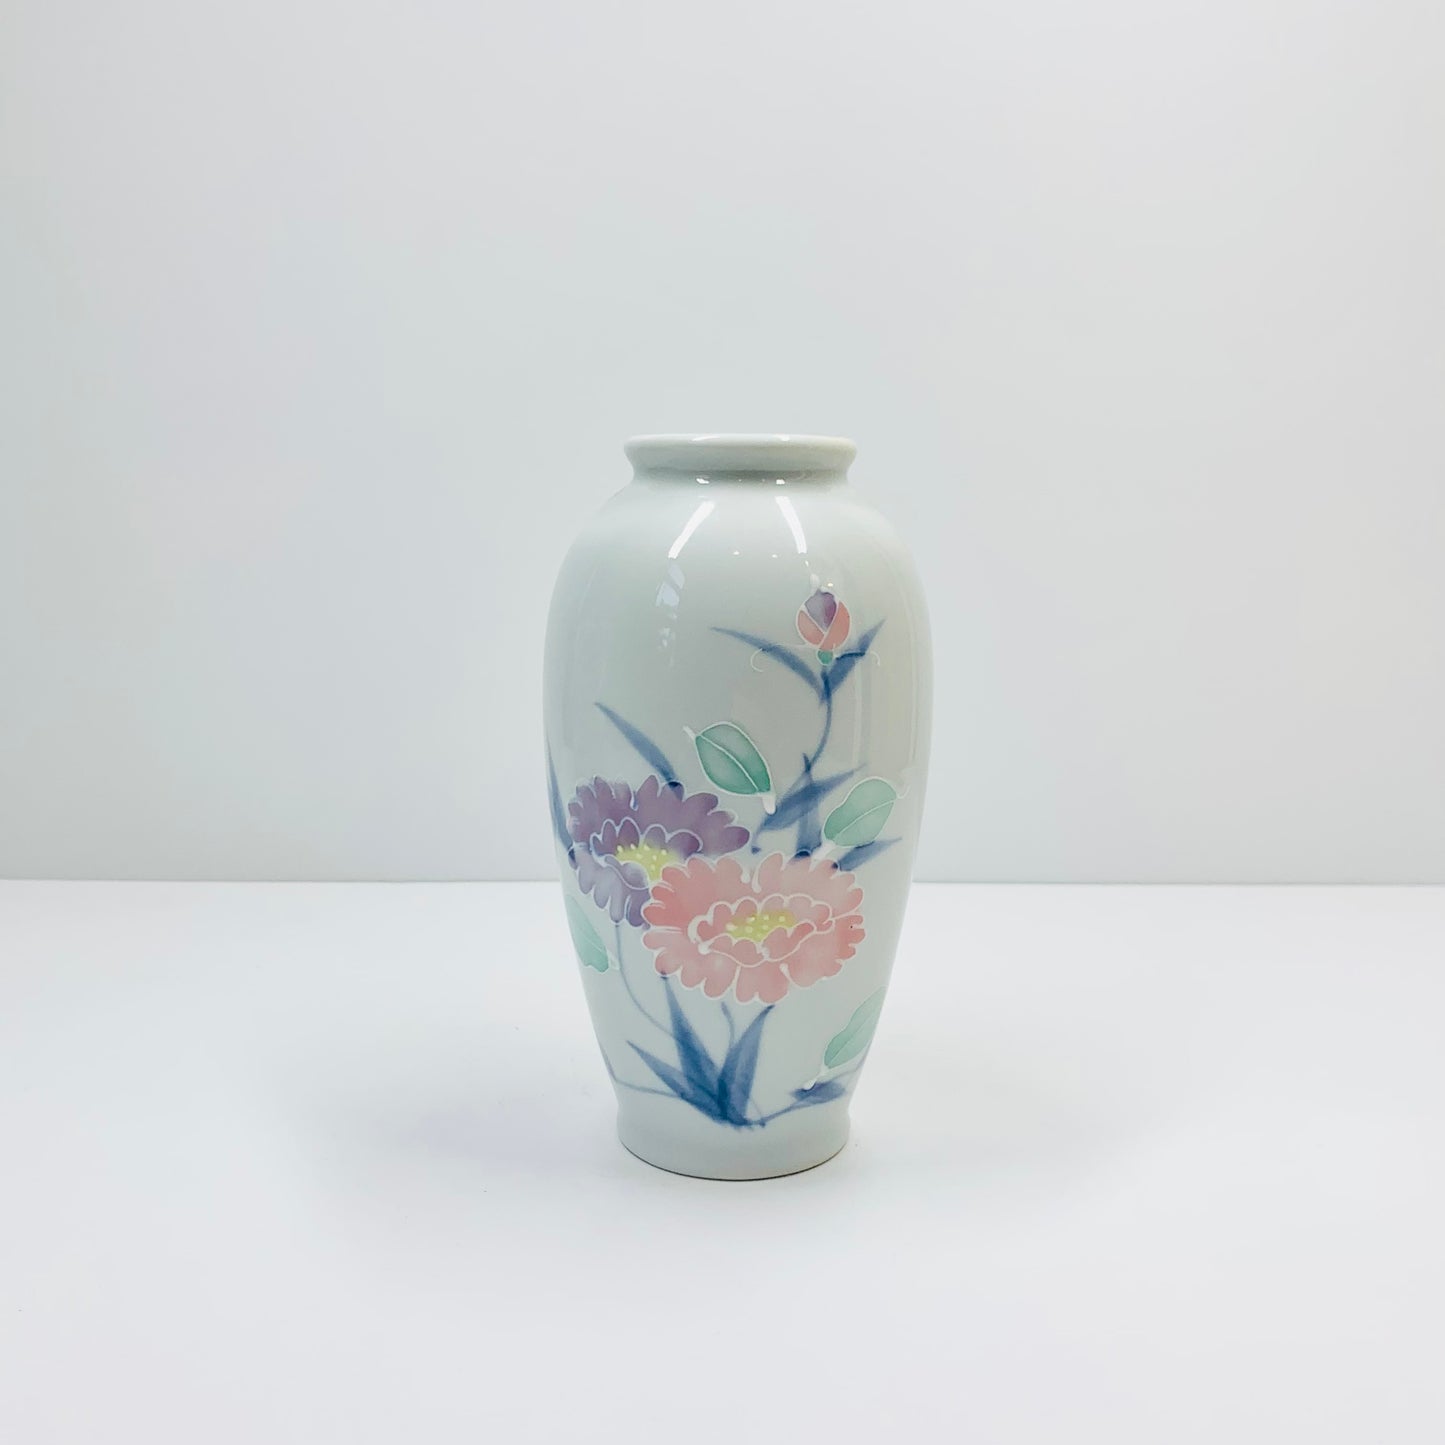 Vintage Japanese porcelain vase